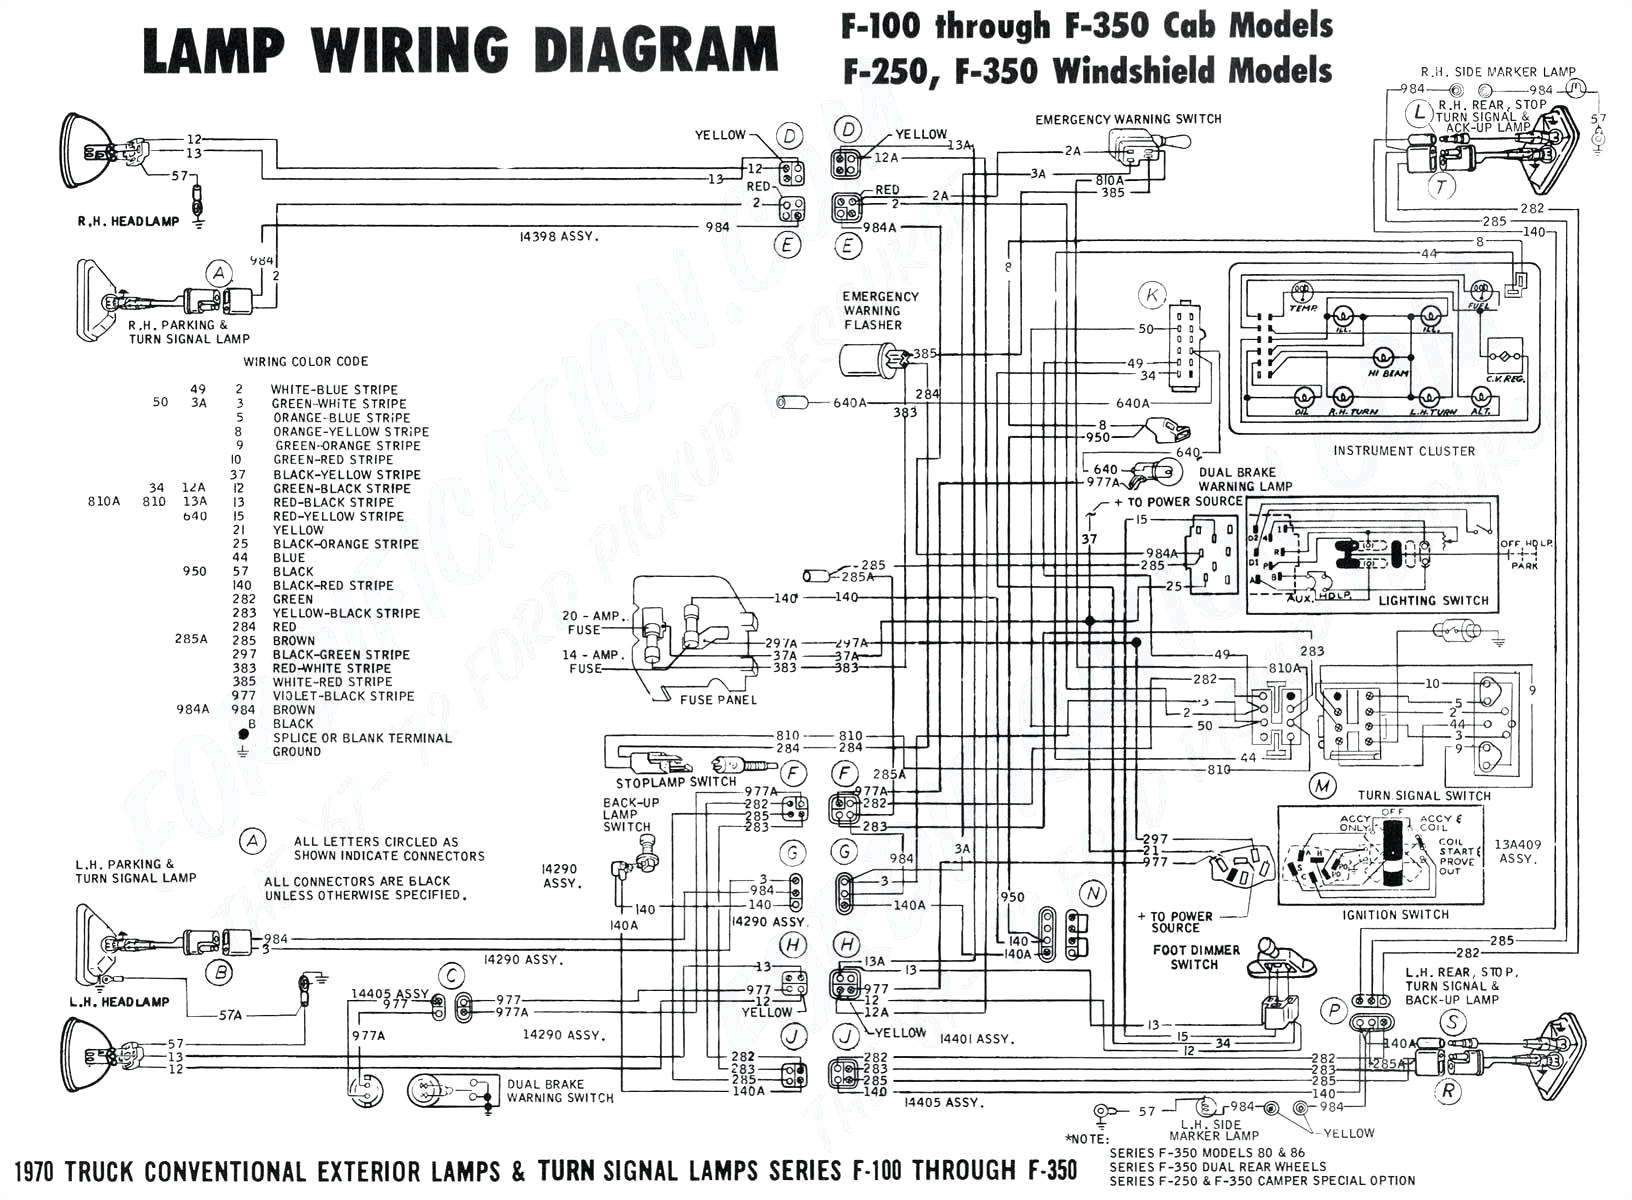 mega 2 wiring diagram blog wiring diagram megane 2 wiring diagram pdf mega 2 wiring diagram